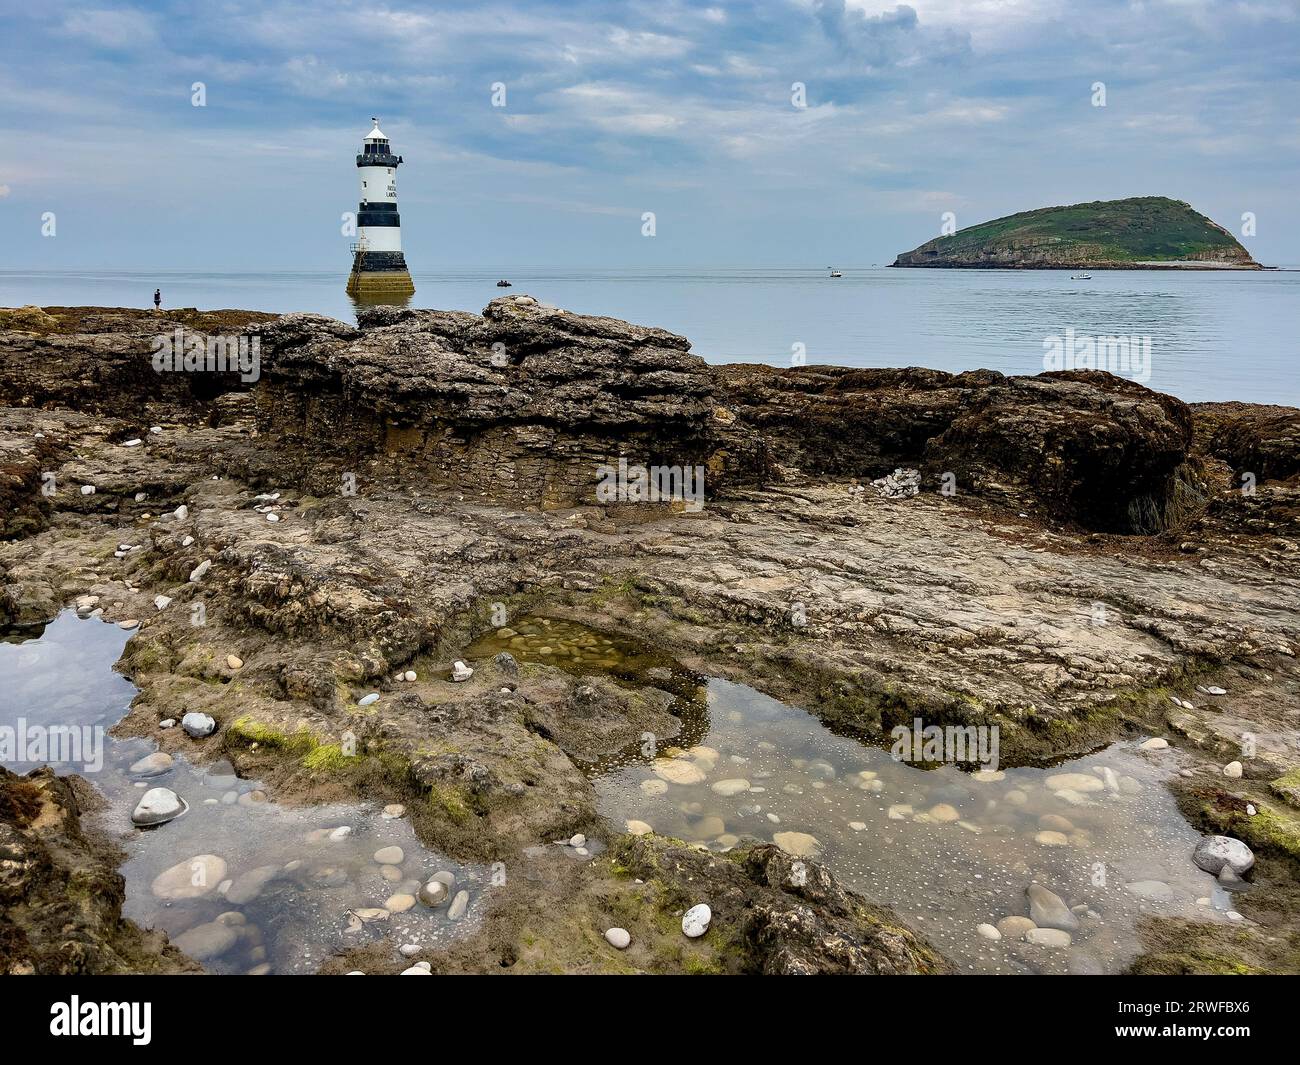 Phare de Penmon sur l'île d'Anglesey sur la côte nord du pays de Galles. Banque D'Images